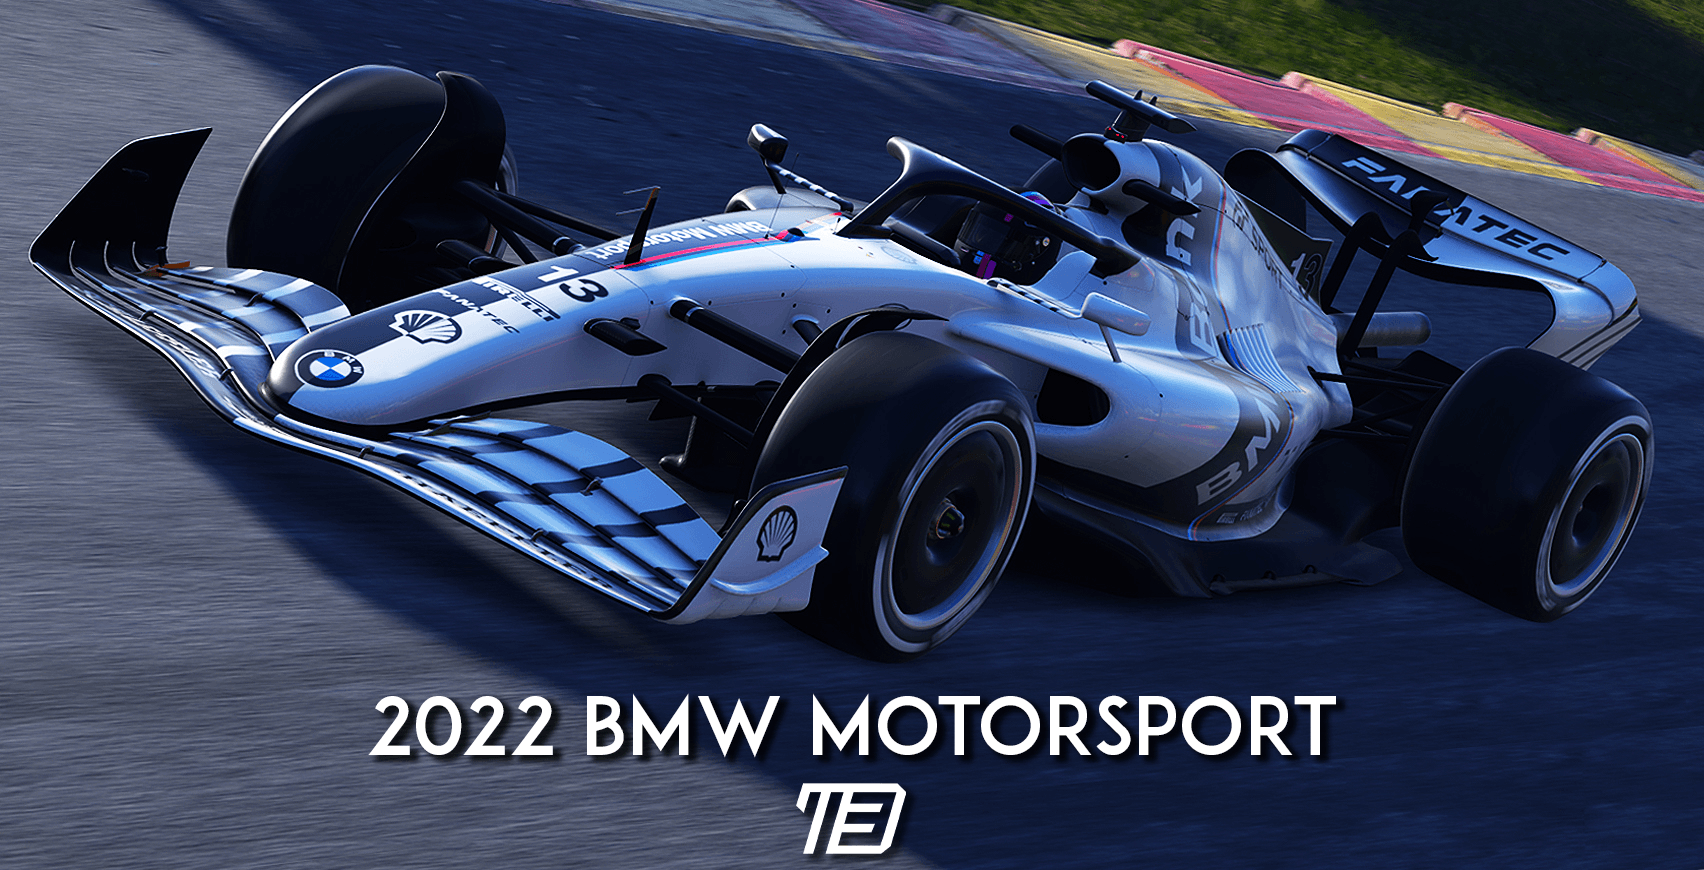 2022 BMW Motorsport, My Team Package